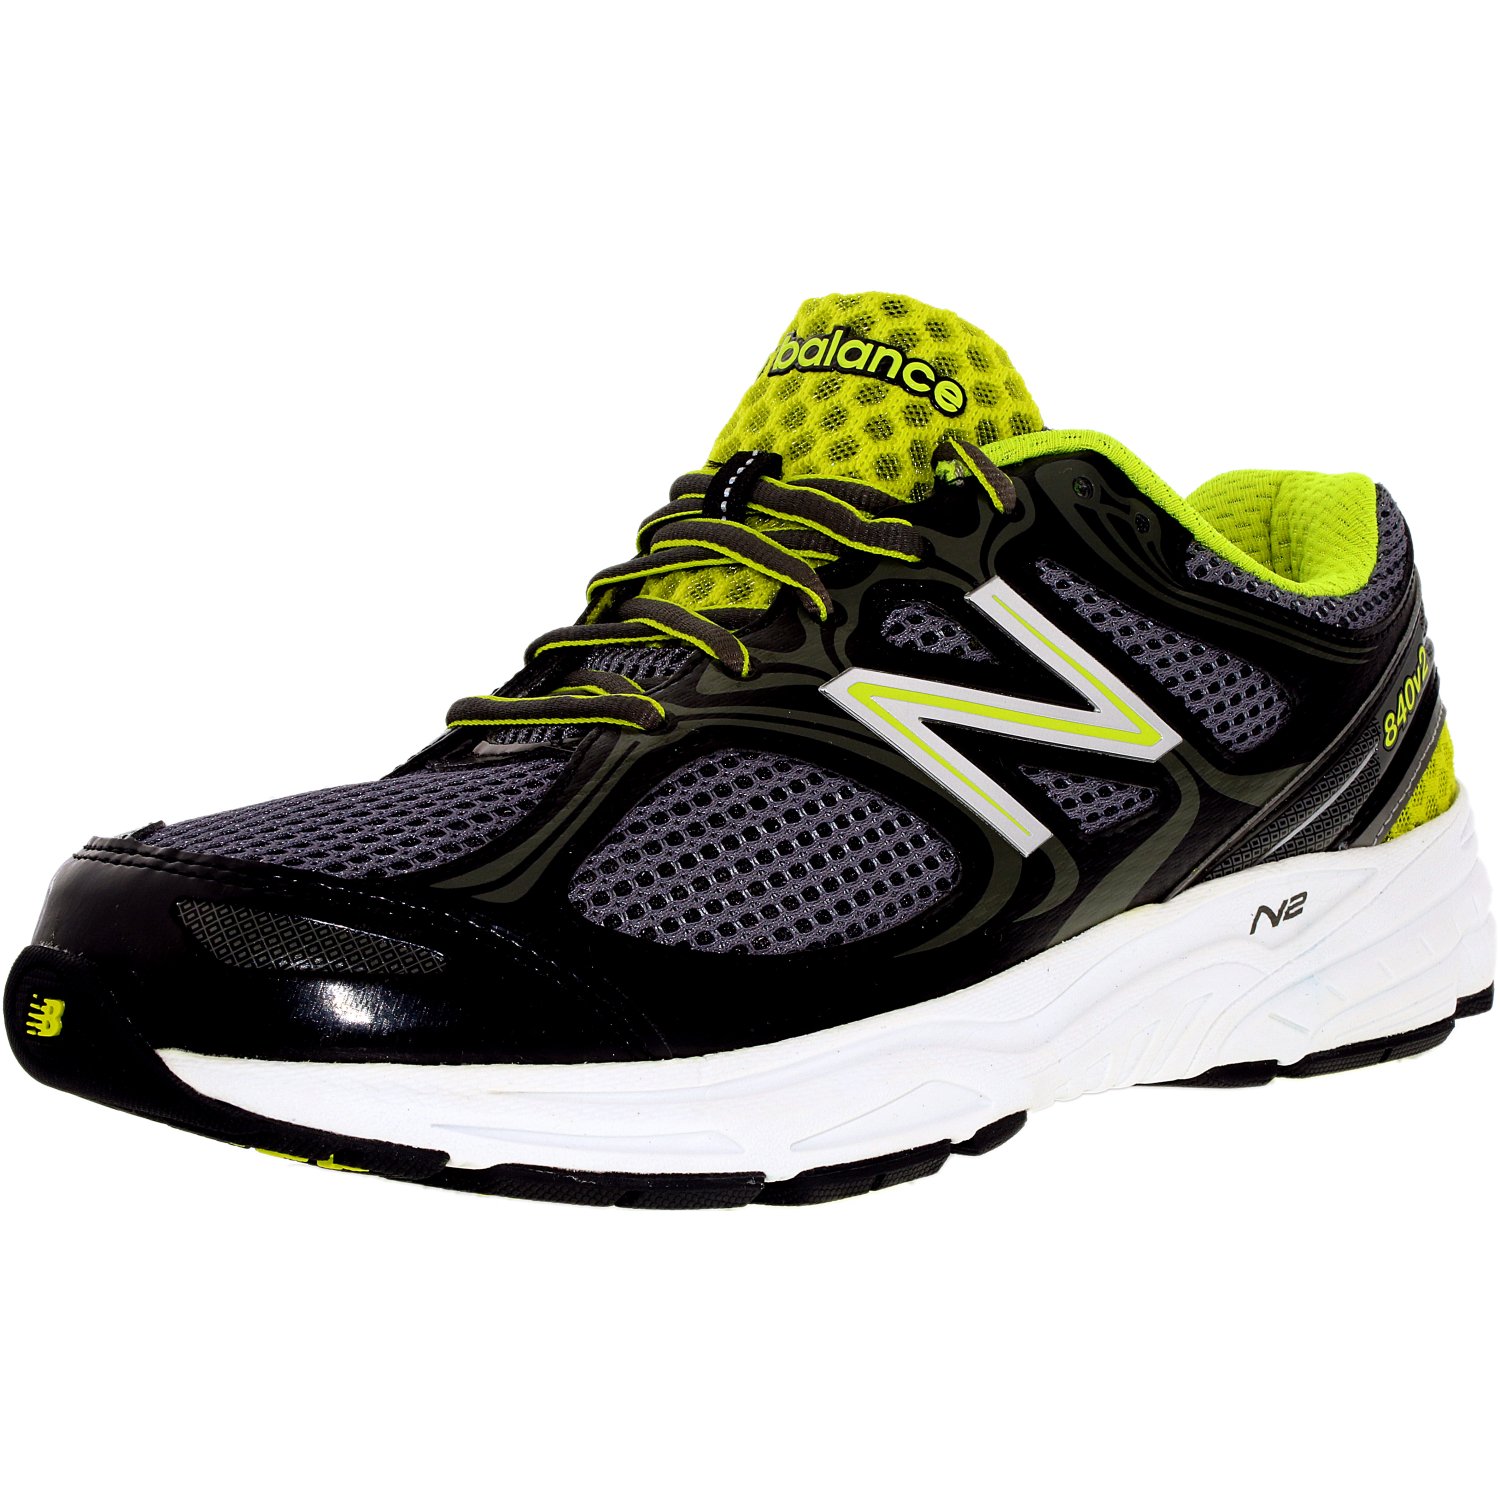 New Balance Men's M840Bg2 Ankle-High Running Shoe | eBay